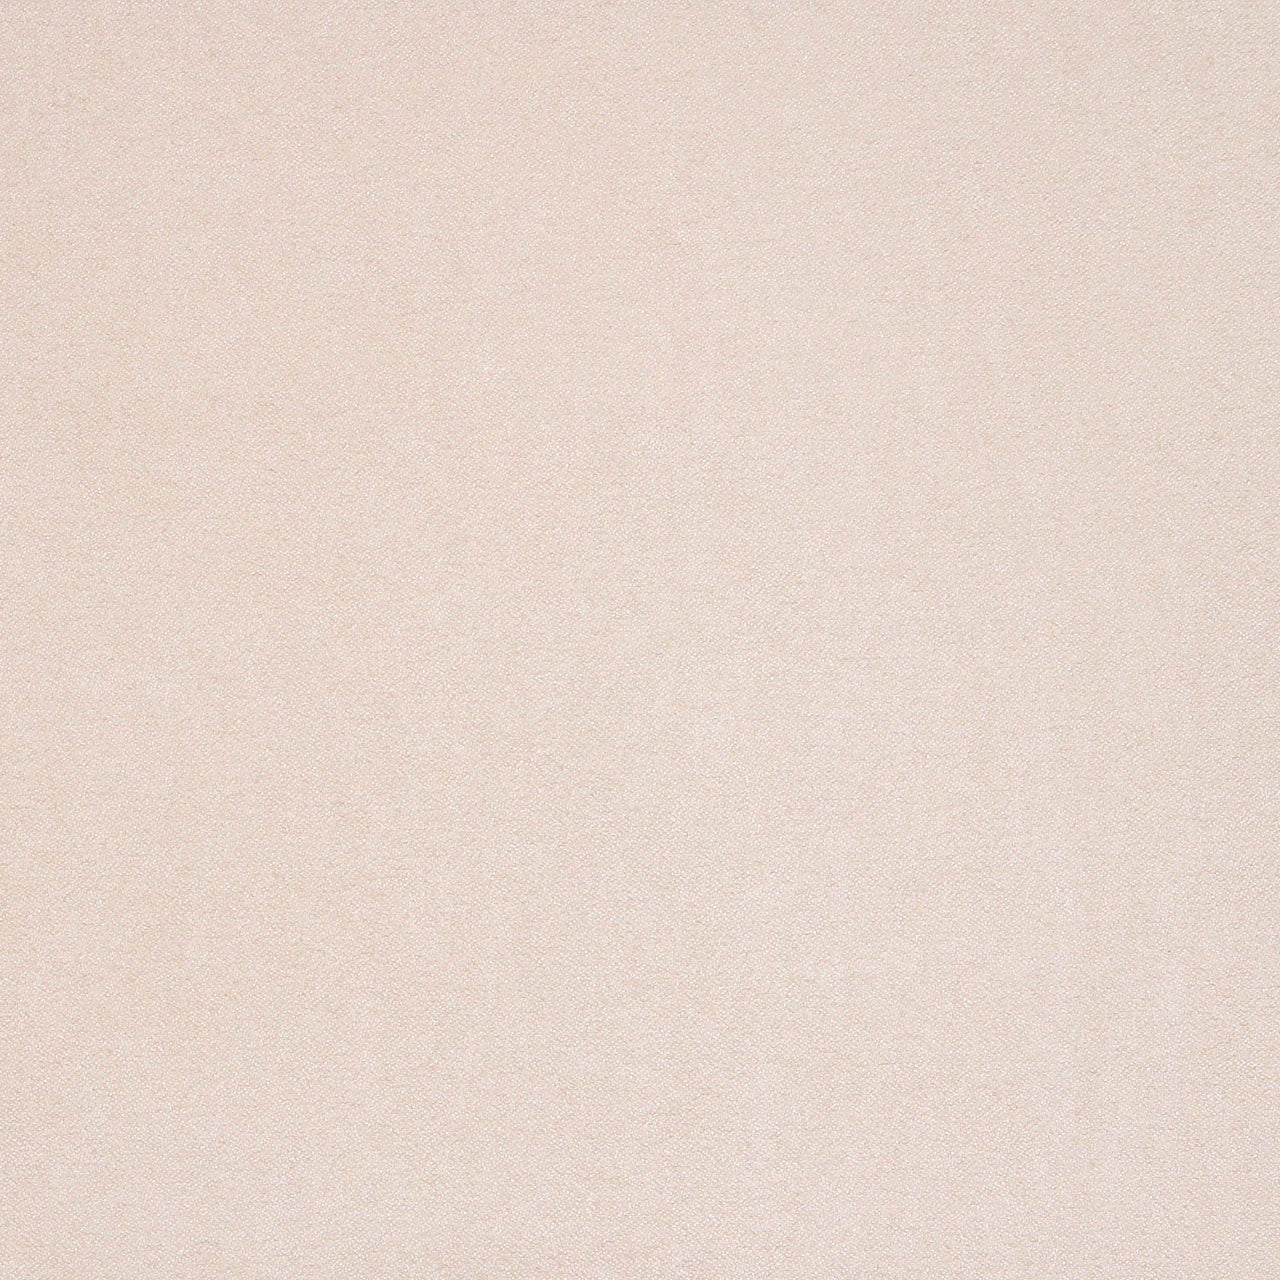 Tissu Faux Daim Crème - Qualité Supérieure - 100% Polyester